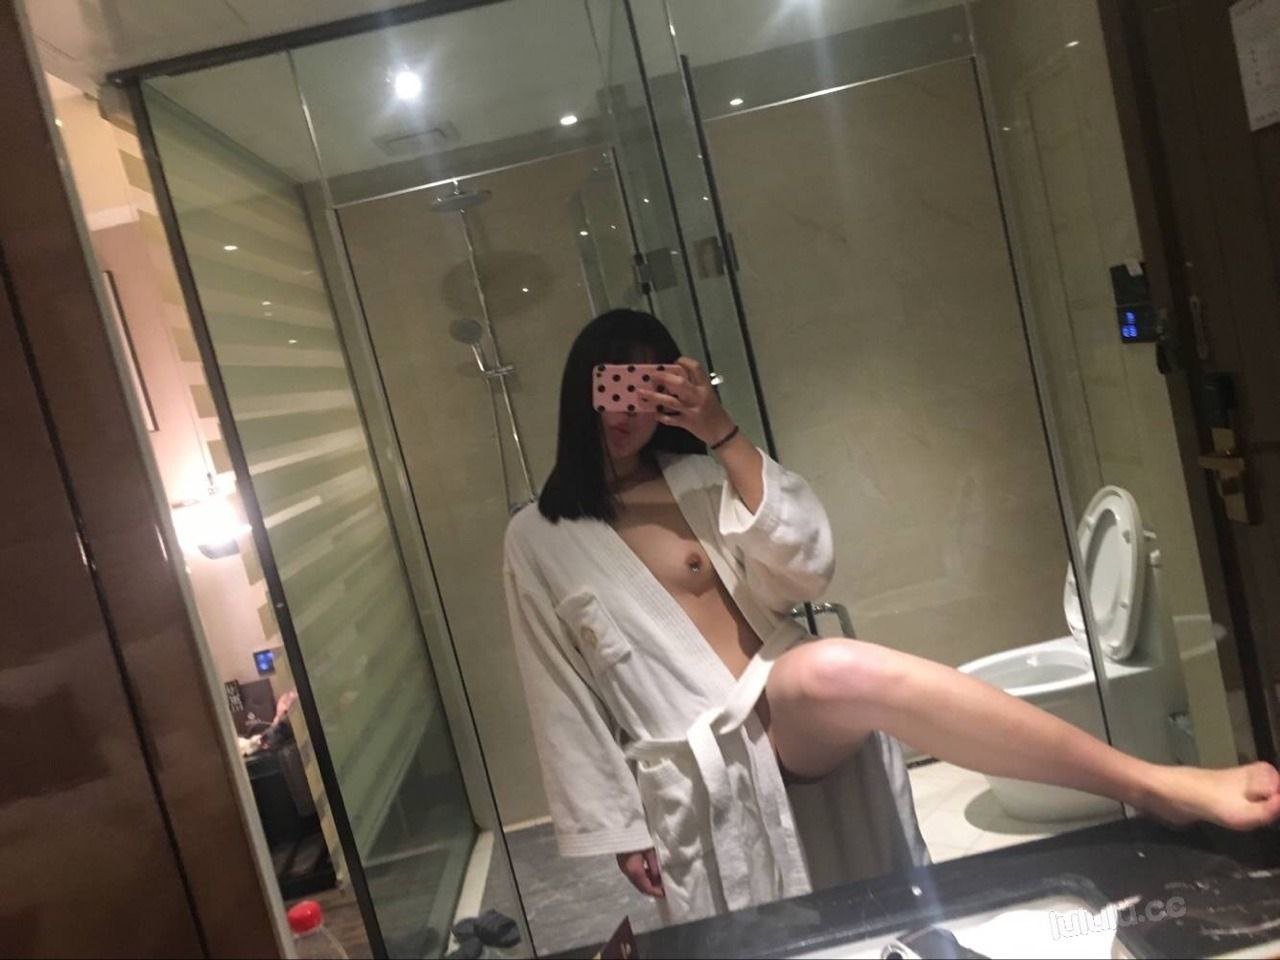 Amateur Asian after sex selfie - Porn hq pic